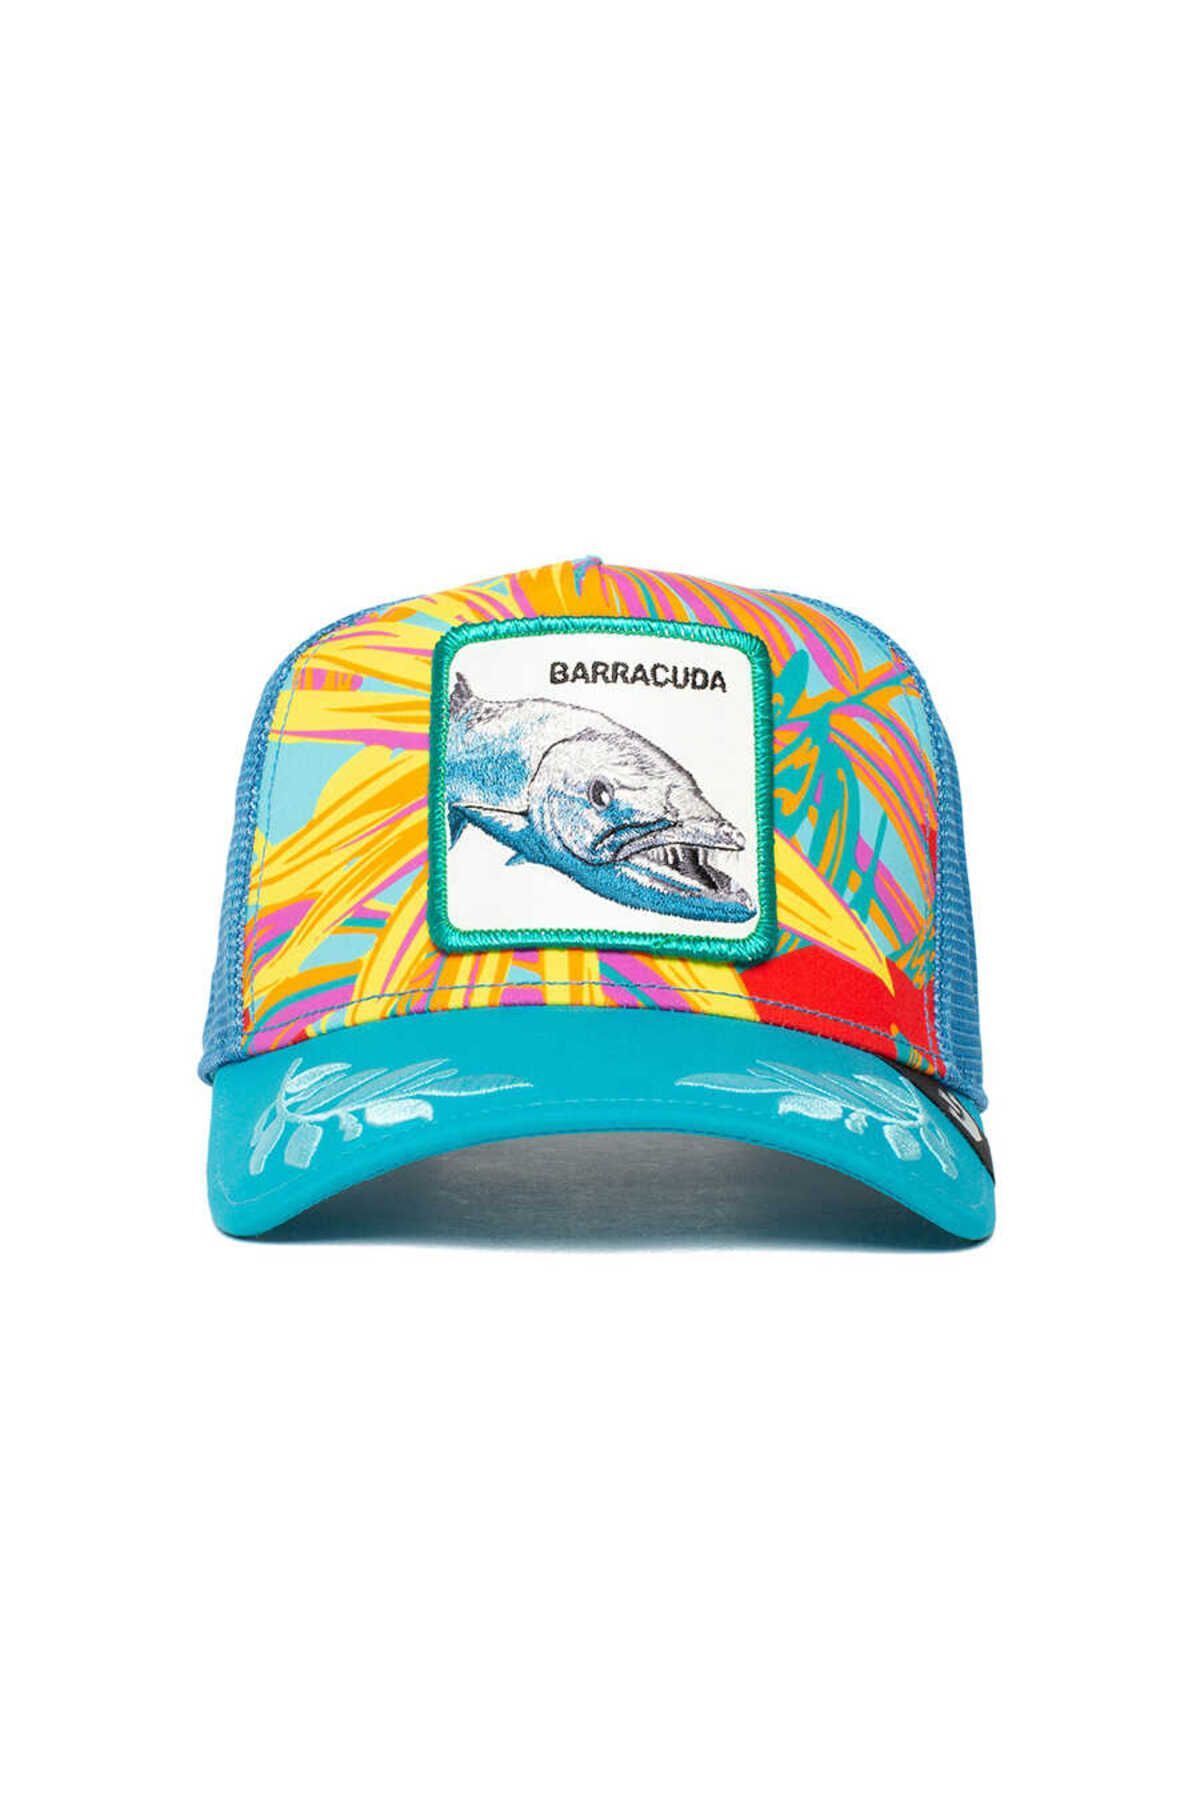 Goorin Bros Ooh Barracuda ( Balık Figürlü ) Şapka 101-0588